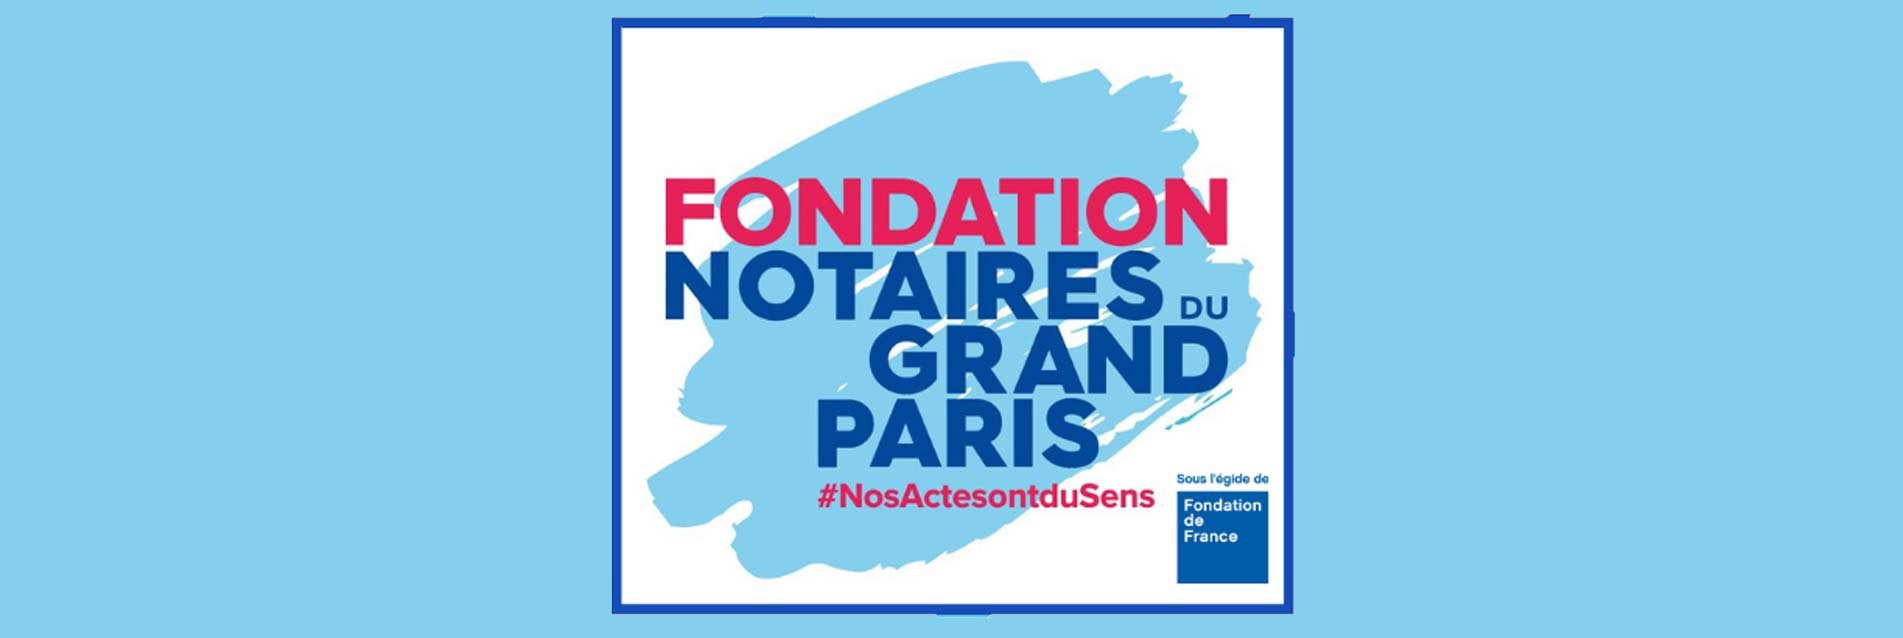 Fondation des Notaires du Grand Paris